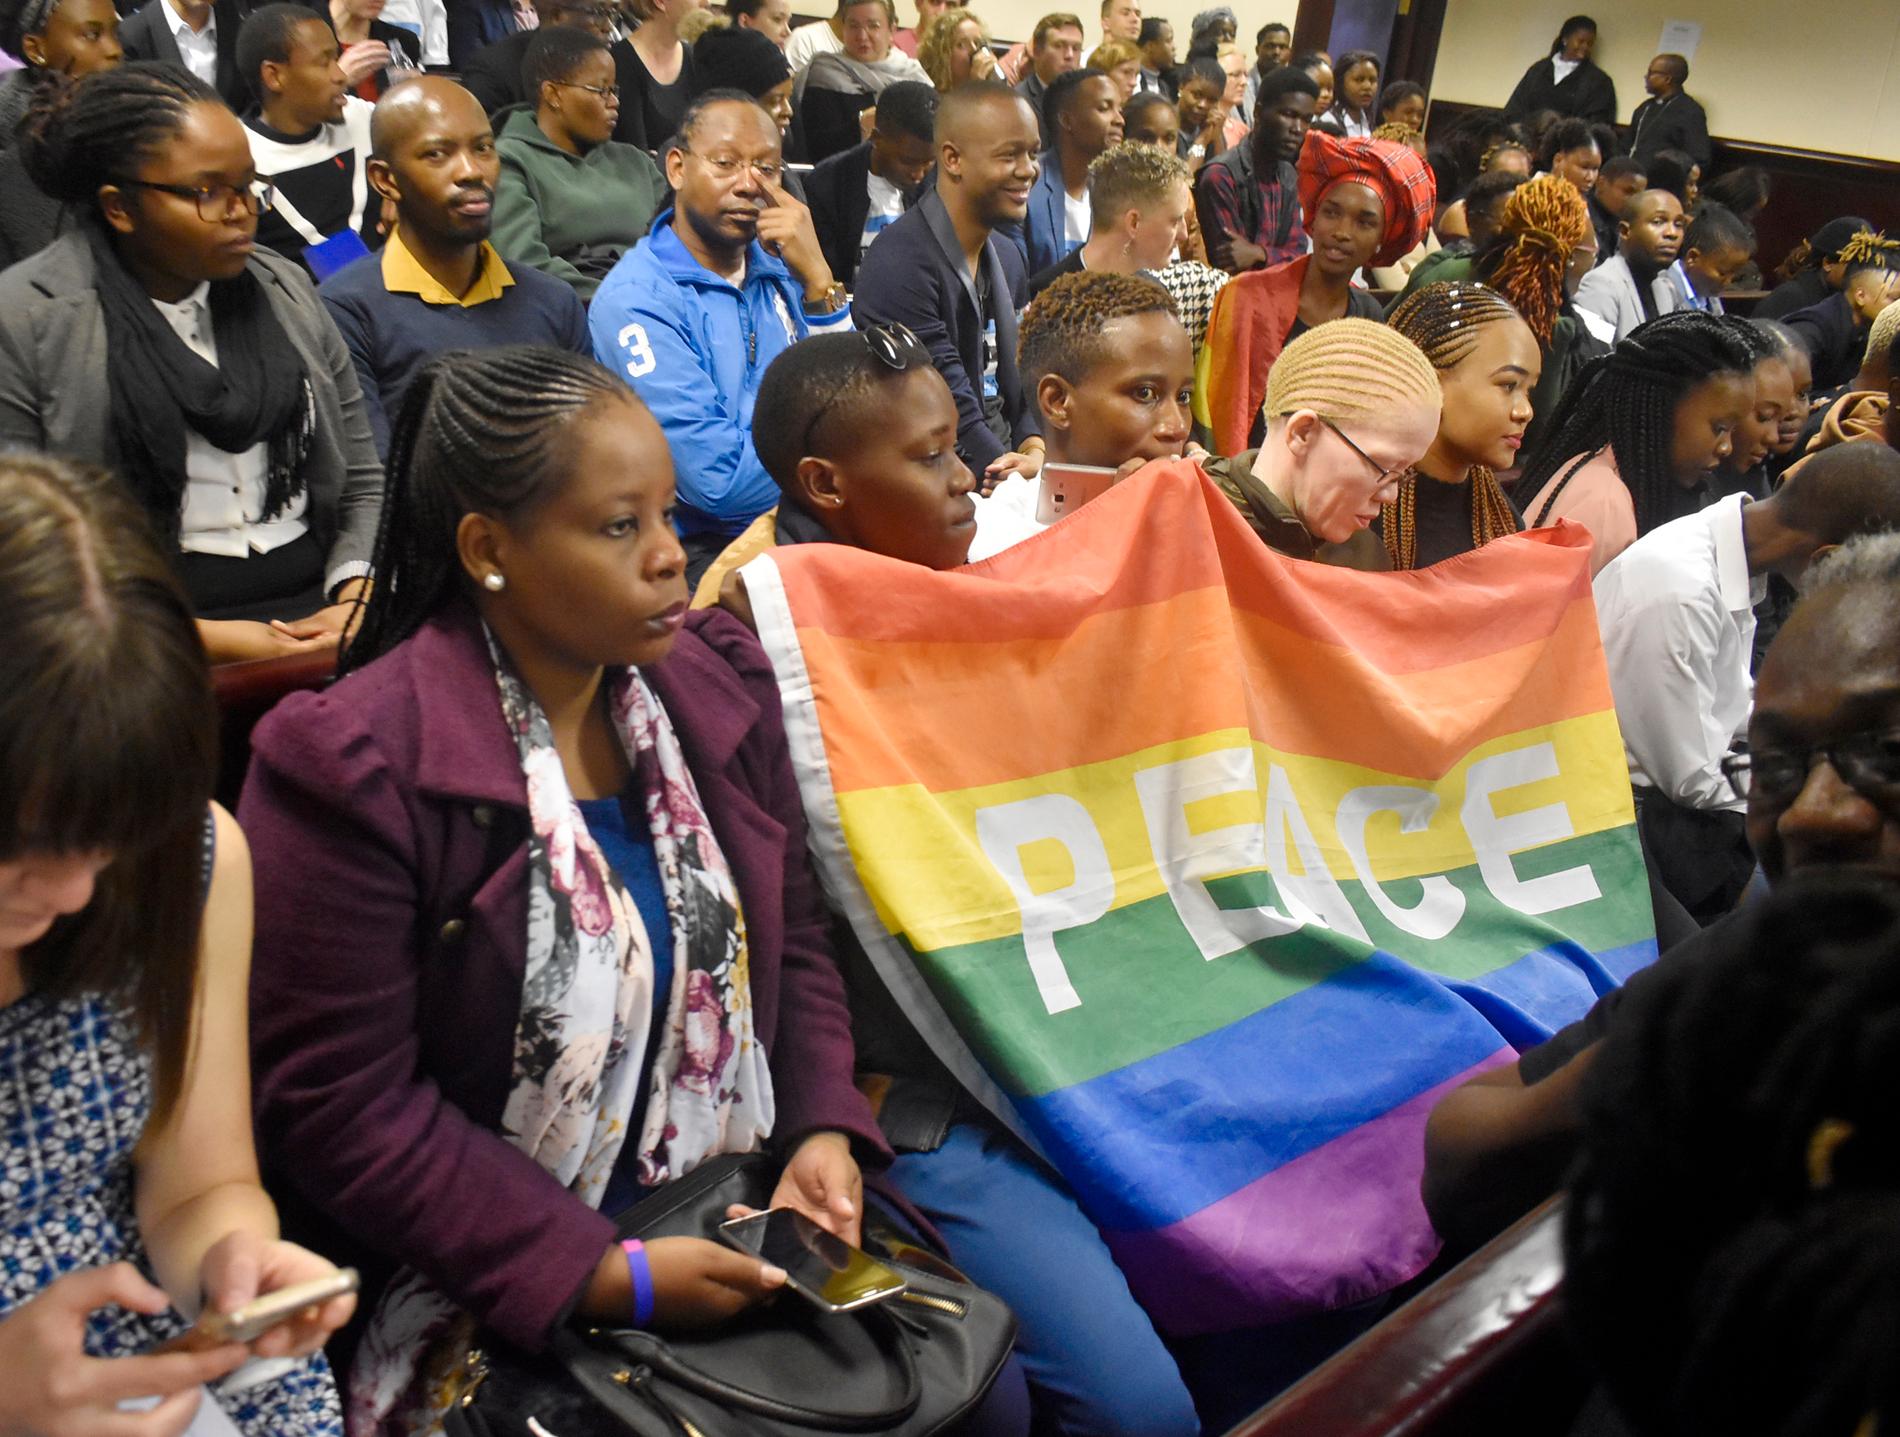 Hbtq-aktivister väntar på beslutet i Botswanas högsta domstol i juni i år. Botswana avkriminaliserade homosexualitet, men det beslutet överklagas nu av regeringen. Arkivbild.